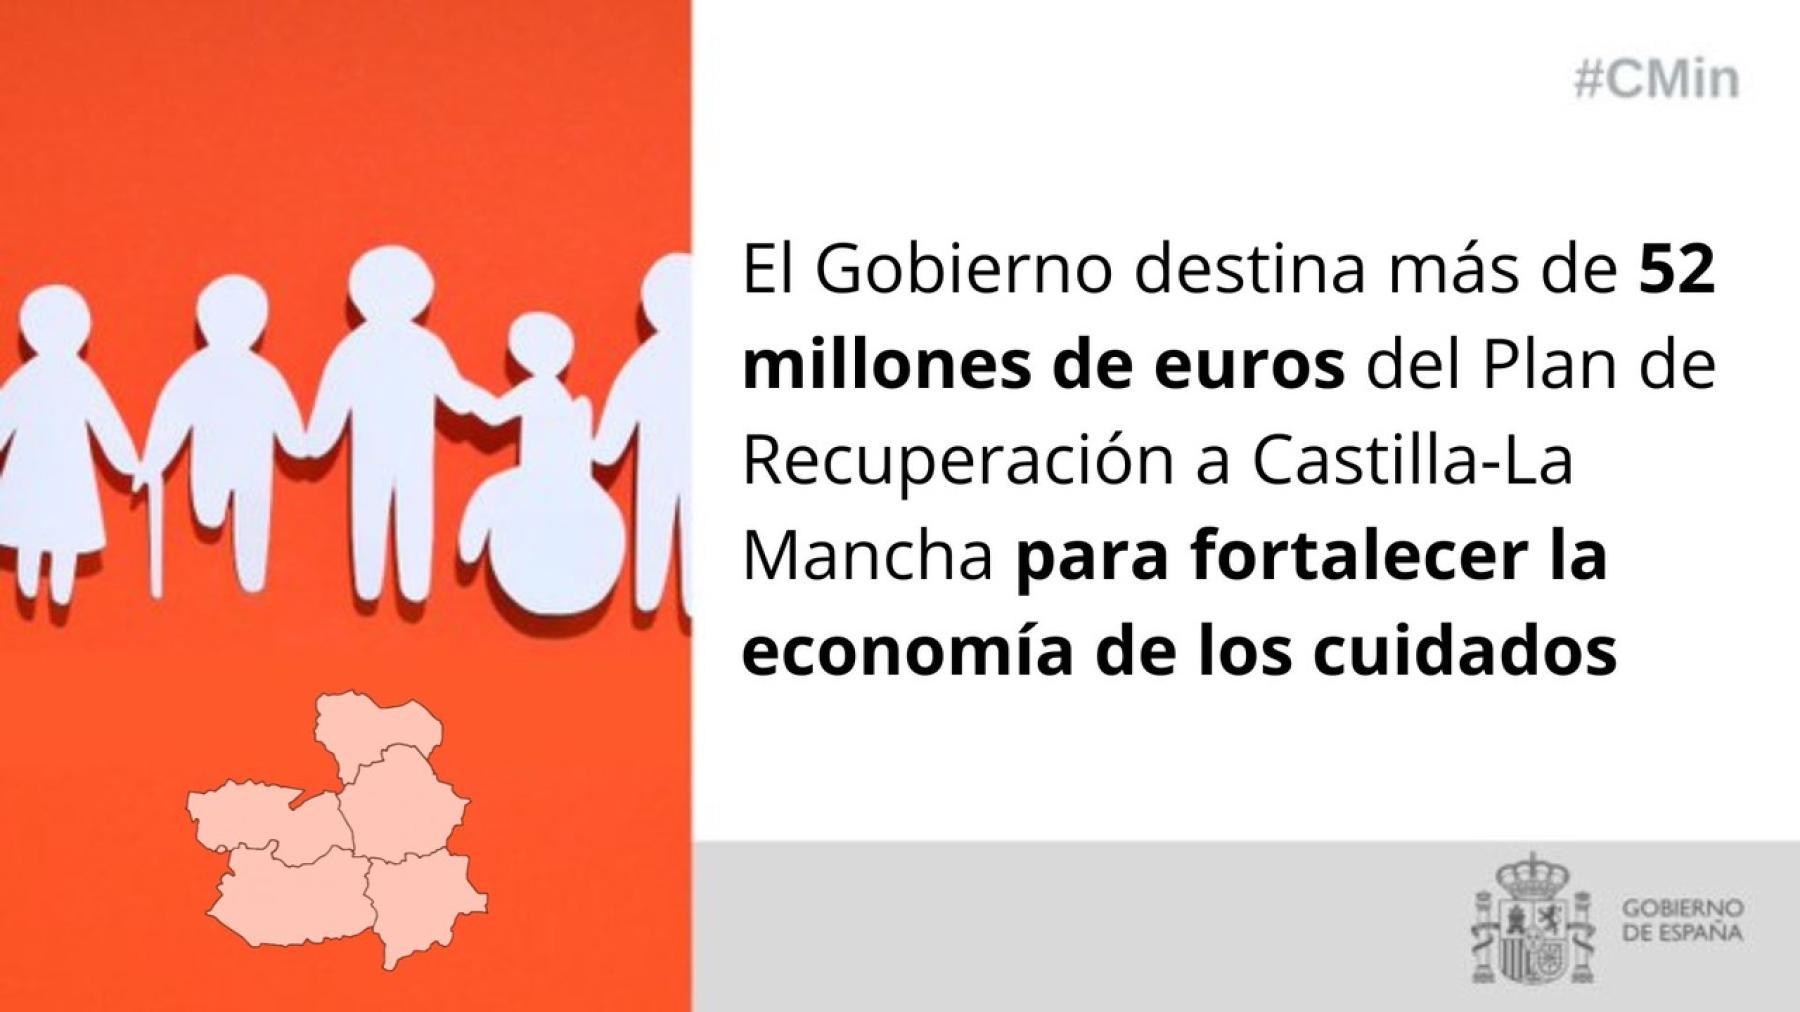 El Gobierno destina más de 52 millones de euros del Plan de Recuperación a Castilla-La Mancha para fortalecer la economía de los cuidados